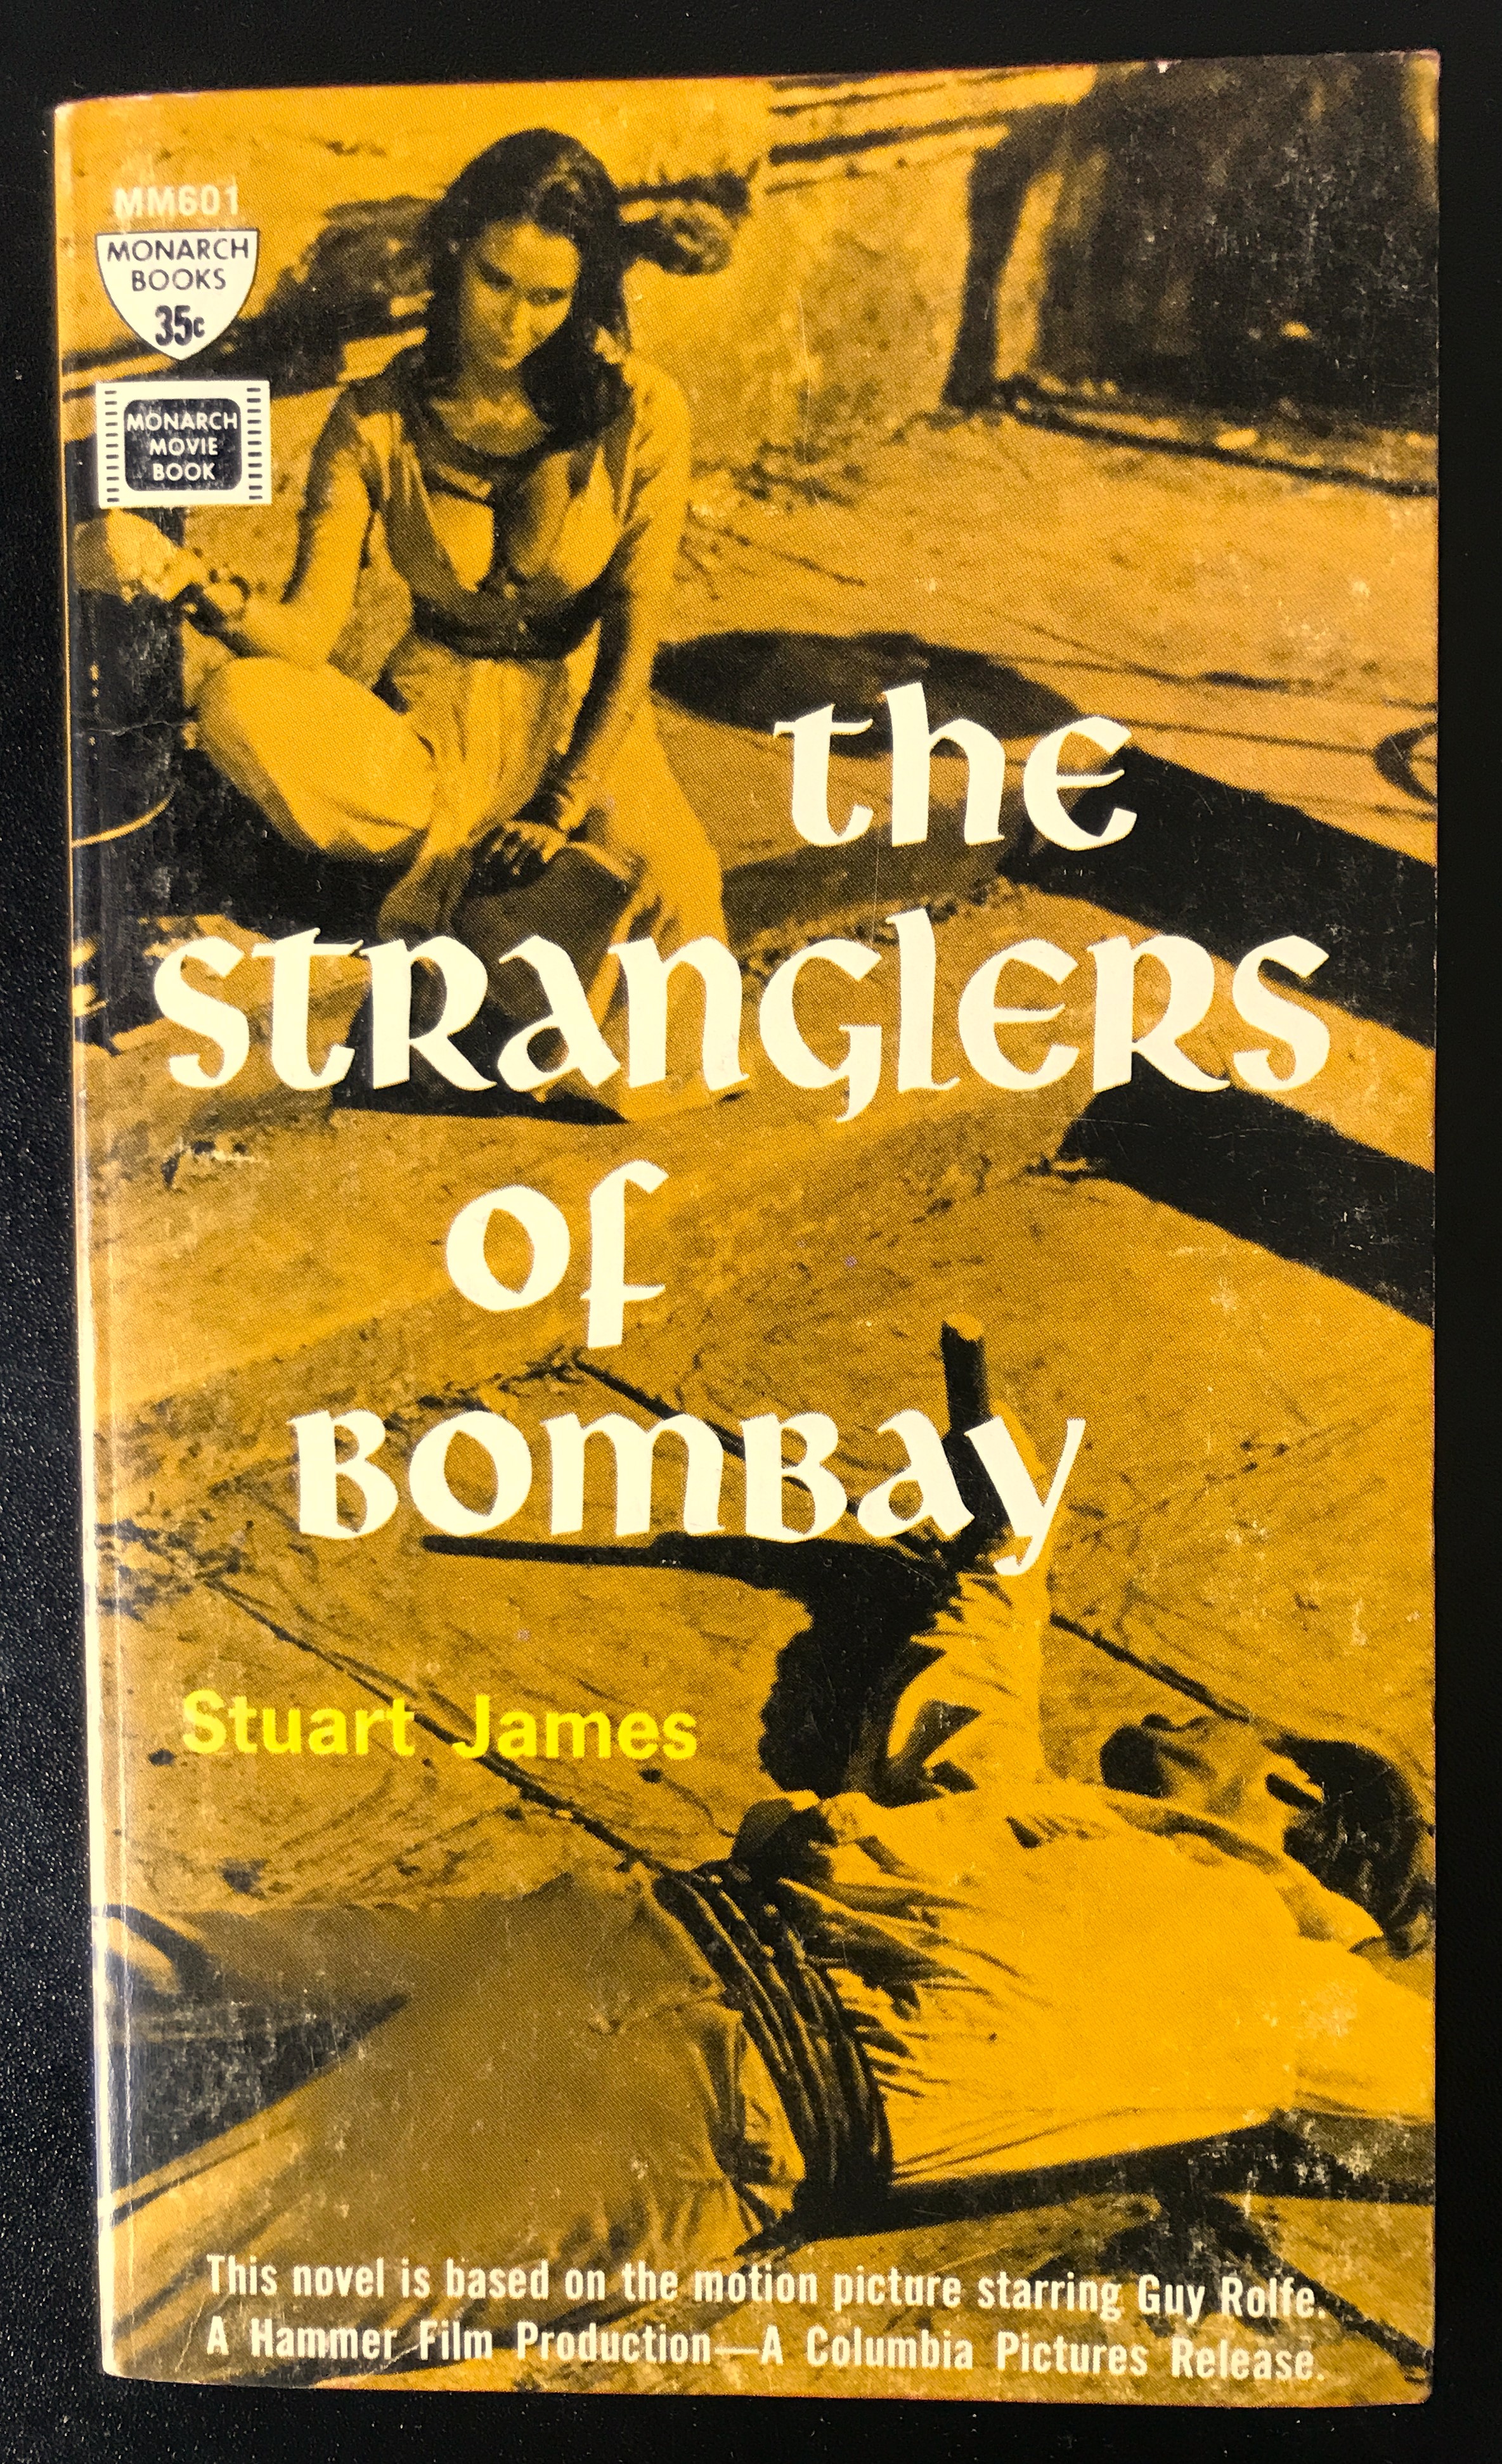 Stranglers of Bombay